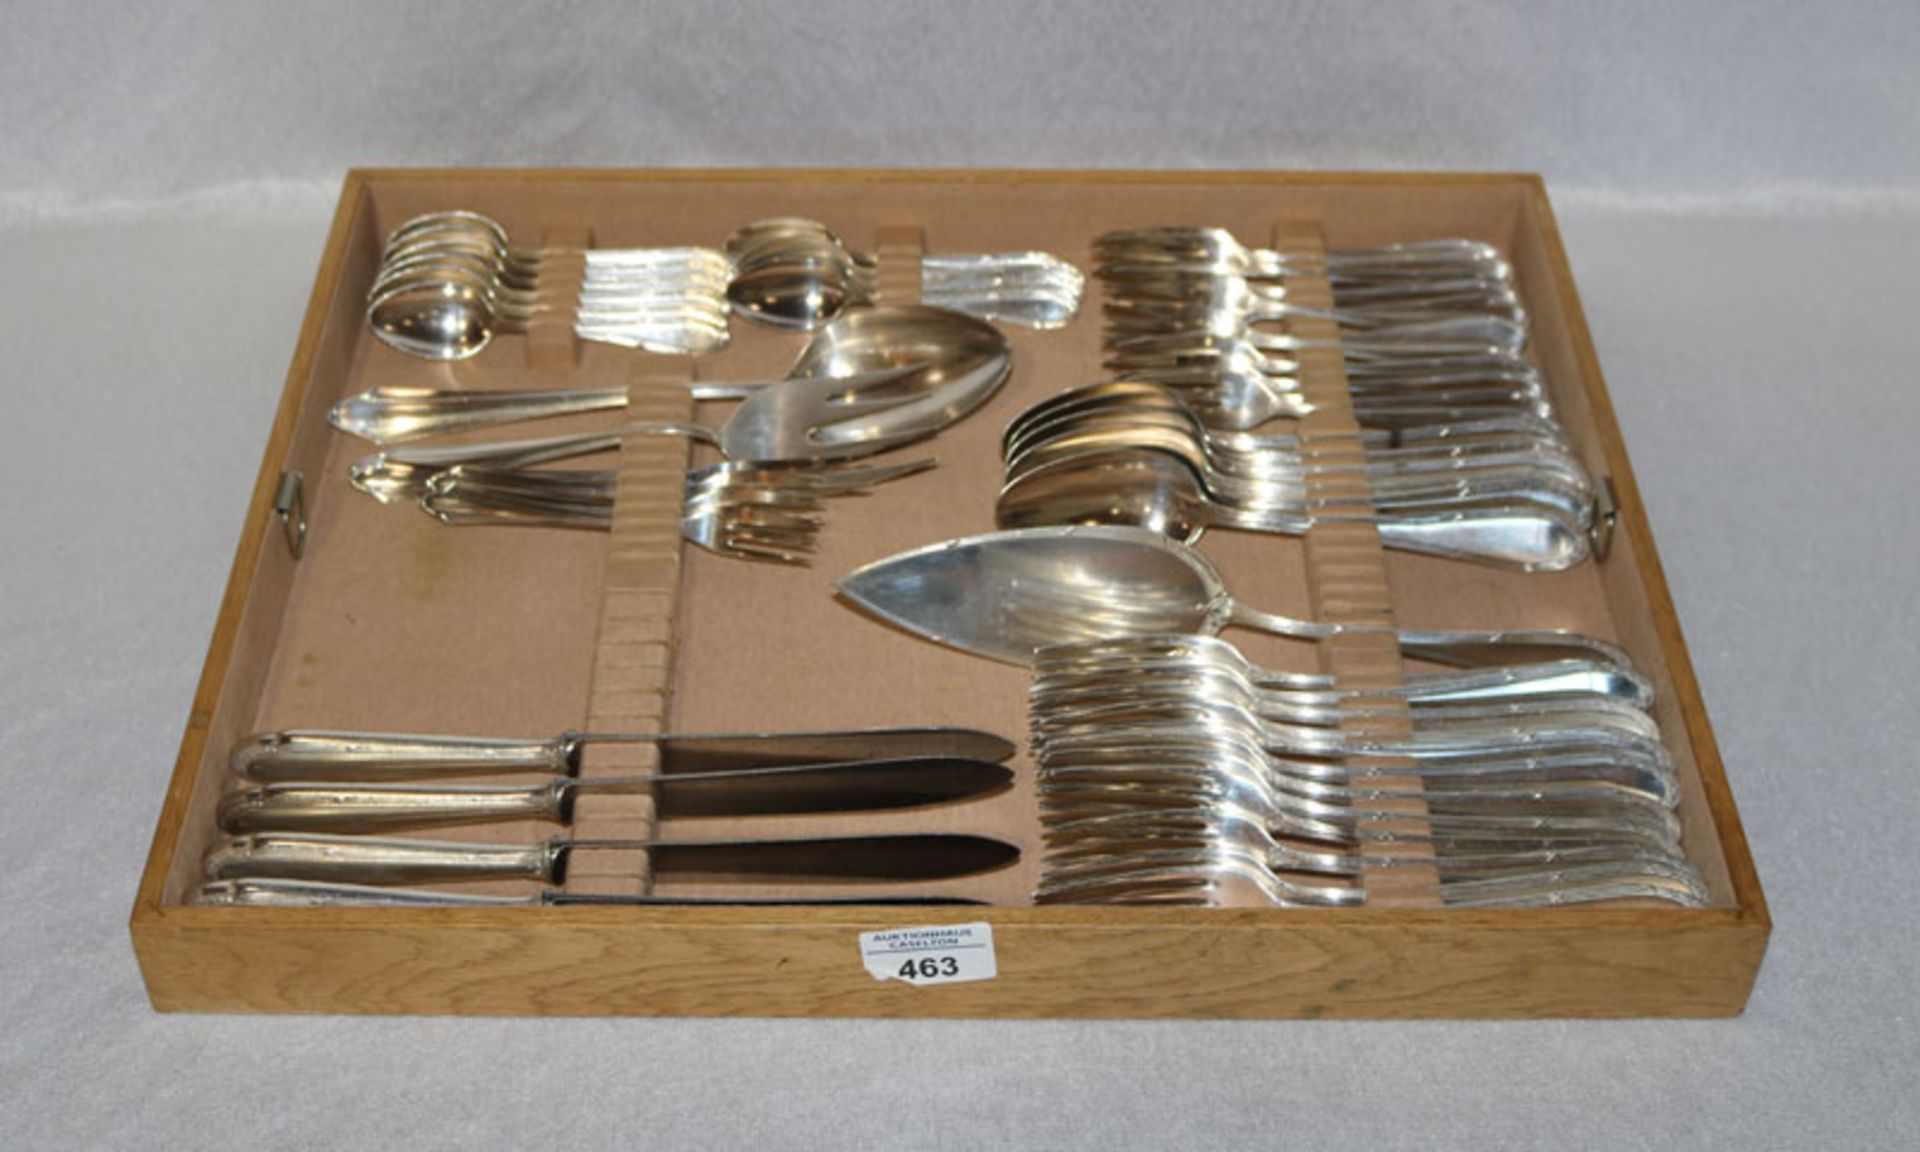 WMF Besteck-Konvolut, versilbert, 12 Menü-Gabeln, 4 Messer, 6 Löffel, 10 Kaffeelöffel, 12